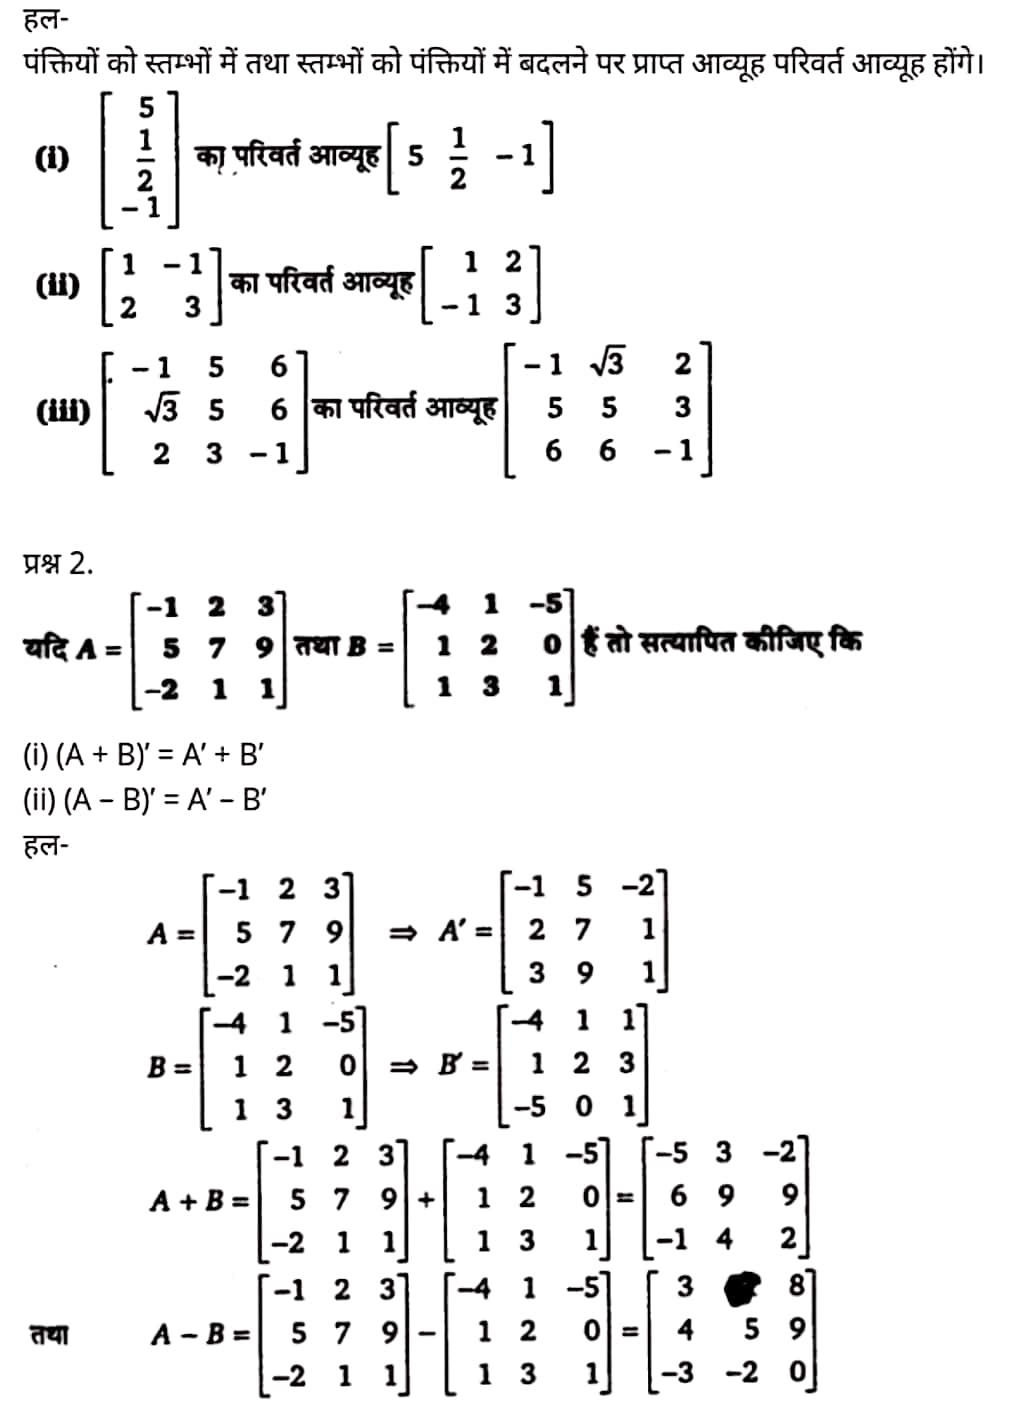 Class 12 Maths Chapter 3,Matrices, Hindi Medium,  मैथ्स कक्षा 12 नोट्स pdf,  मैथ्स कक्षा 12 नोट्स 2020 NCERT,  मैथ्स कक्षा 12 PDF,  मैथ्स पुस्तक,  मैथ्स की बुक,  मैथ्स प्रश्नोत्तरी Class 12, 12 वीं मैथ्स पुस्तक RBSE,  बिहार बोर्ड 12 वीं मैथ्स नोट्स,   12th Maths book in hindi, 12th Maths notes in hindi, cbse books for class 12, cbse books in hindi, cbse ncert books, class 12 Maths notes in hindi,  class 12 hindi ncert solutions, Maths 2020, Maths 2021, Maths 2022, Maths book class 12, Maths book in hindi, Maths class 12 in hindi, Maths notes for class 12 up board in hindi, ncert all books, ncert app in hindi, ncert book solution, ncert books class 10, ncert books class 12, ncert books for class 7, ncert books for upsc in hindi, ncert books in hindi class 10, ncert books in hindi for class 12 Maths, ncert books in hindi for class 6, ncert books in hindi pdf, ncert class 12 hindi book, ncert english book, ncert Maths book in hindi, ncert Maths books in hindi pdf, ncert Maths class 12, ncert in hindi,  old ncert books in hindi, online ncert books in hindi,  up board 12th, up board 12th syllabus, up board class 10 hindi book, up board class 12 books, up board class 12 new syllabus, up Board Maths 2020, up Board Maths 2021, up Board Maths 2022, up Board Maths 2023, up board intermediate Maths syllabus, up board intermediate syllabus 2021, Up board Master 2021, up board model paper 2021, up board model paper all subject, up board new syllabus of class 12th Maths, up board paper 2021, Up board syllabus 2021, UP board syllabus 2022,  12 veen maiths buk hindee mein, 12 veen maiths nots hindee mein, seebeeesasee kitaaben 12 ke lie, seebeeesasee kitaaben hindee mein, seebeeesasee enaseeaaratee kitaaben, klaas 12 maiths nots in hindee, klaas 12 hindee enaseeteeaar solyooshans, maiths 2020, maiths 2021, maiths 2022, maiths buk klaas 12, maiths buk in hindee, maiths klaas 12 hindee mein, maiths nots phor klaas 12 ap bord in hindee, nchairt all books, nchairt app in hindi, nchairt book solution, nchairt books klaas 10, nchairt books klaas 12, nchairt books kaksha 7 ke lie, nchairt books for hindi mein hindee mein, nchairt books in hindi kaksha 10, nchairt books in hindi ke lie kaksha 12 ganit, nchairt kitaaben hindee mein kaksha 6 ke lie, nchairt pustaken hindee mein, nchairt books 12 hindee pustak, nchairt angrejee pustak mein , nchairt maths book in hindi, nchairt maths books in hindi pdf, nchairt maths chlass 12, nchairt in hindi, puraanee nchairt books in hindi, onalain nchairt books in hindi, bord 12 veen, up bord 12 veen ka silebas, up bord klaas 10 hindee kee pustak , bord kee kaksha 12 kee kitaaben, bord kee kaksha 12 kee naee paathyakram, bord kee ganit 2020, bord kee ganit 2021, ganit kee padhaee s 2022, up bord maiths 2023, up bord intarameediet maiths silebas, up bord intarameediet silebas 2021, up bord maastar 2021, up bord modal pepar 2021, up bord modal pepar sabhee vishay, up bord nyoo klaasiks oph klaas 12 veen maiths, up bord pepar 2021, up bord paathyakram 2021, yoopee bord paathyakram 2022,  12 वीं मैथ्स पुस्तक हिंदी में, 12 वीं मैथ्स नोट्स हिंदी में, कक्षा 12 के लिए सीबीएससी पुस्तकें, हिंदी में सीबीएससी पुस्तकें, सीबीएससी  पुस्तकें, कक्षा 12 मैथ्स नोट्स हिंदी में, कक्षा 12 हिंदी एनसीईआरटी समाधान, मैथ्स 2020, मैथ्स 2021, मैथ्स 2022, मैथ्स  बुक क्लास 12, मैथ्स बुक इन हिंदी, बायोलॉजी क्लास 12 हिंदी में, मैथ्स नोट्स इन क्लास 12 यूपी  बोर्ड इन हिंदी, एनसीईआरटी मैथ्स की किताब हिंदी में,  बोर्ड 12 वीं तक, 12 वीं तक की पाठ्यक्रम, बोर्ड कक्षा 10 की हिंदी पुस्तक  , बोर्ड की कक्षा 12 की किताबें, बोर्ड की कक्षा 12 की नई पाठ्यक्रम, बोर्ड मैथ्स 2020, यूपी   बोर्ड मैथ्स 2021, यूपी  बोर्ड मैथ्स 2022, यूपी  बोर्ड मैथ्स 2023, यूपी  बोर्ड इंटरमीडिएट बायोलॉजी सिलेबस, यूपी  बोर्ड इंटरमीडिएट सिलेबस 2021, यूपी  बोर्ड मास्टर 2021, यूपी  बोर्ड मॉडल पेपर 2021, यूपी  मॉडल पेपर सभी विषय, यूपी  बोर्ड न्यू क्लास का सिलेबस  12 वीं मैथ्स, अप बोर्ड पेपर 2021, यूपी बोर्ड सिलेबस 2021, यूपी बोर्ड सिलेबस 2022,